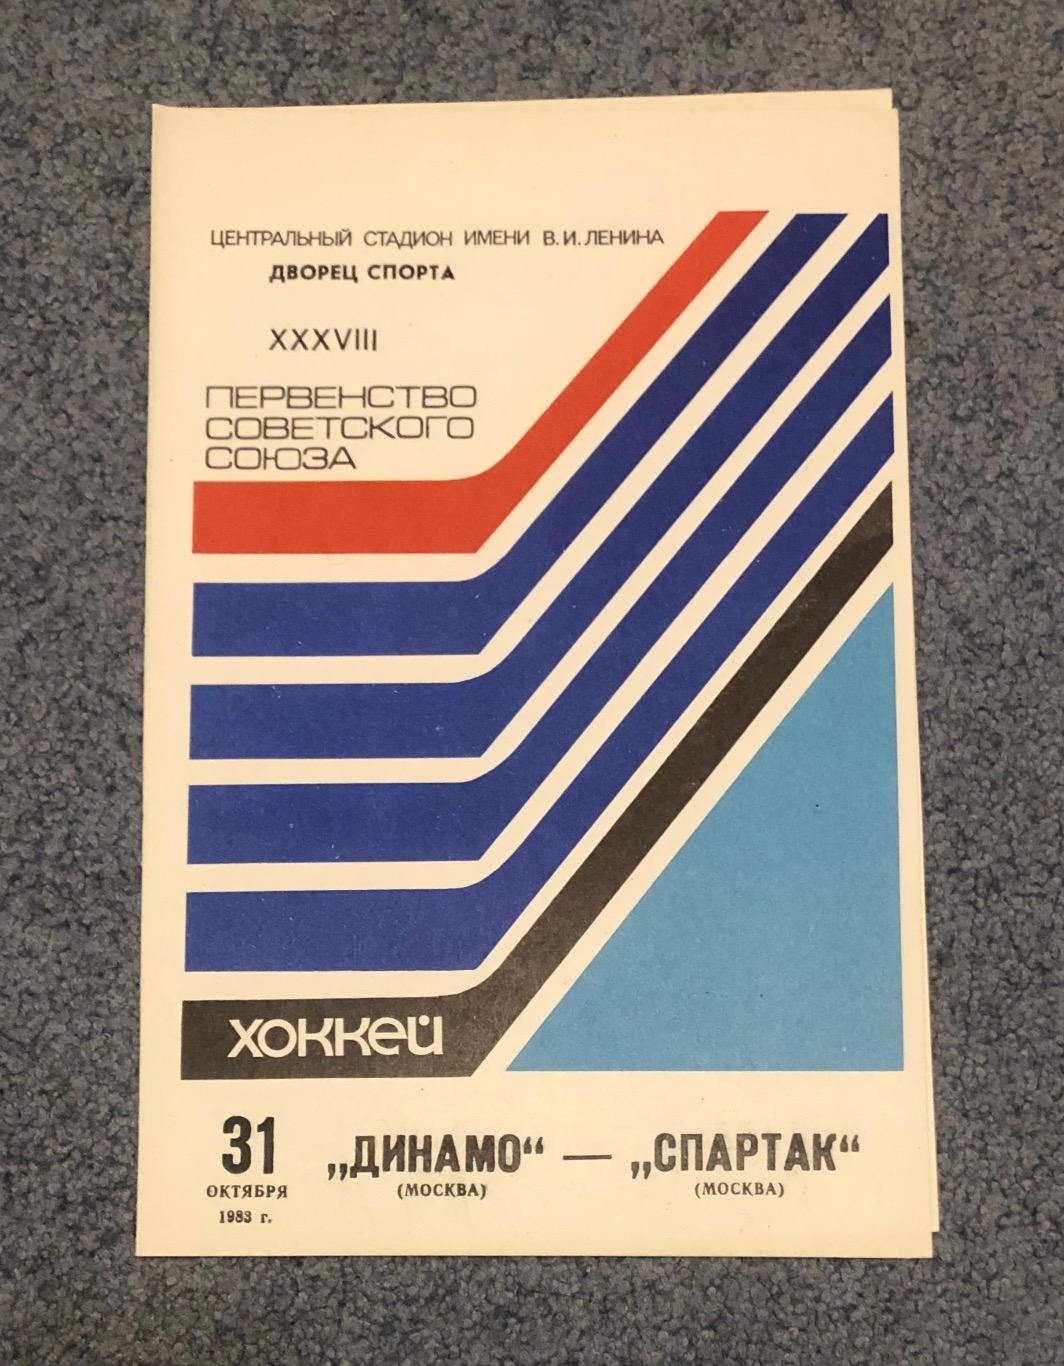 Динамо Москва - Спартак Москва, 31.10.1983